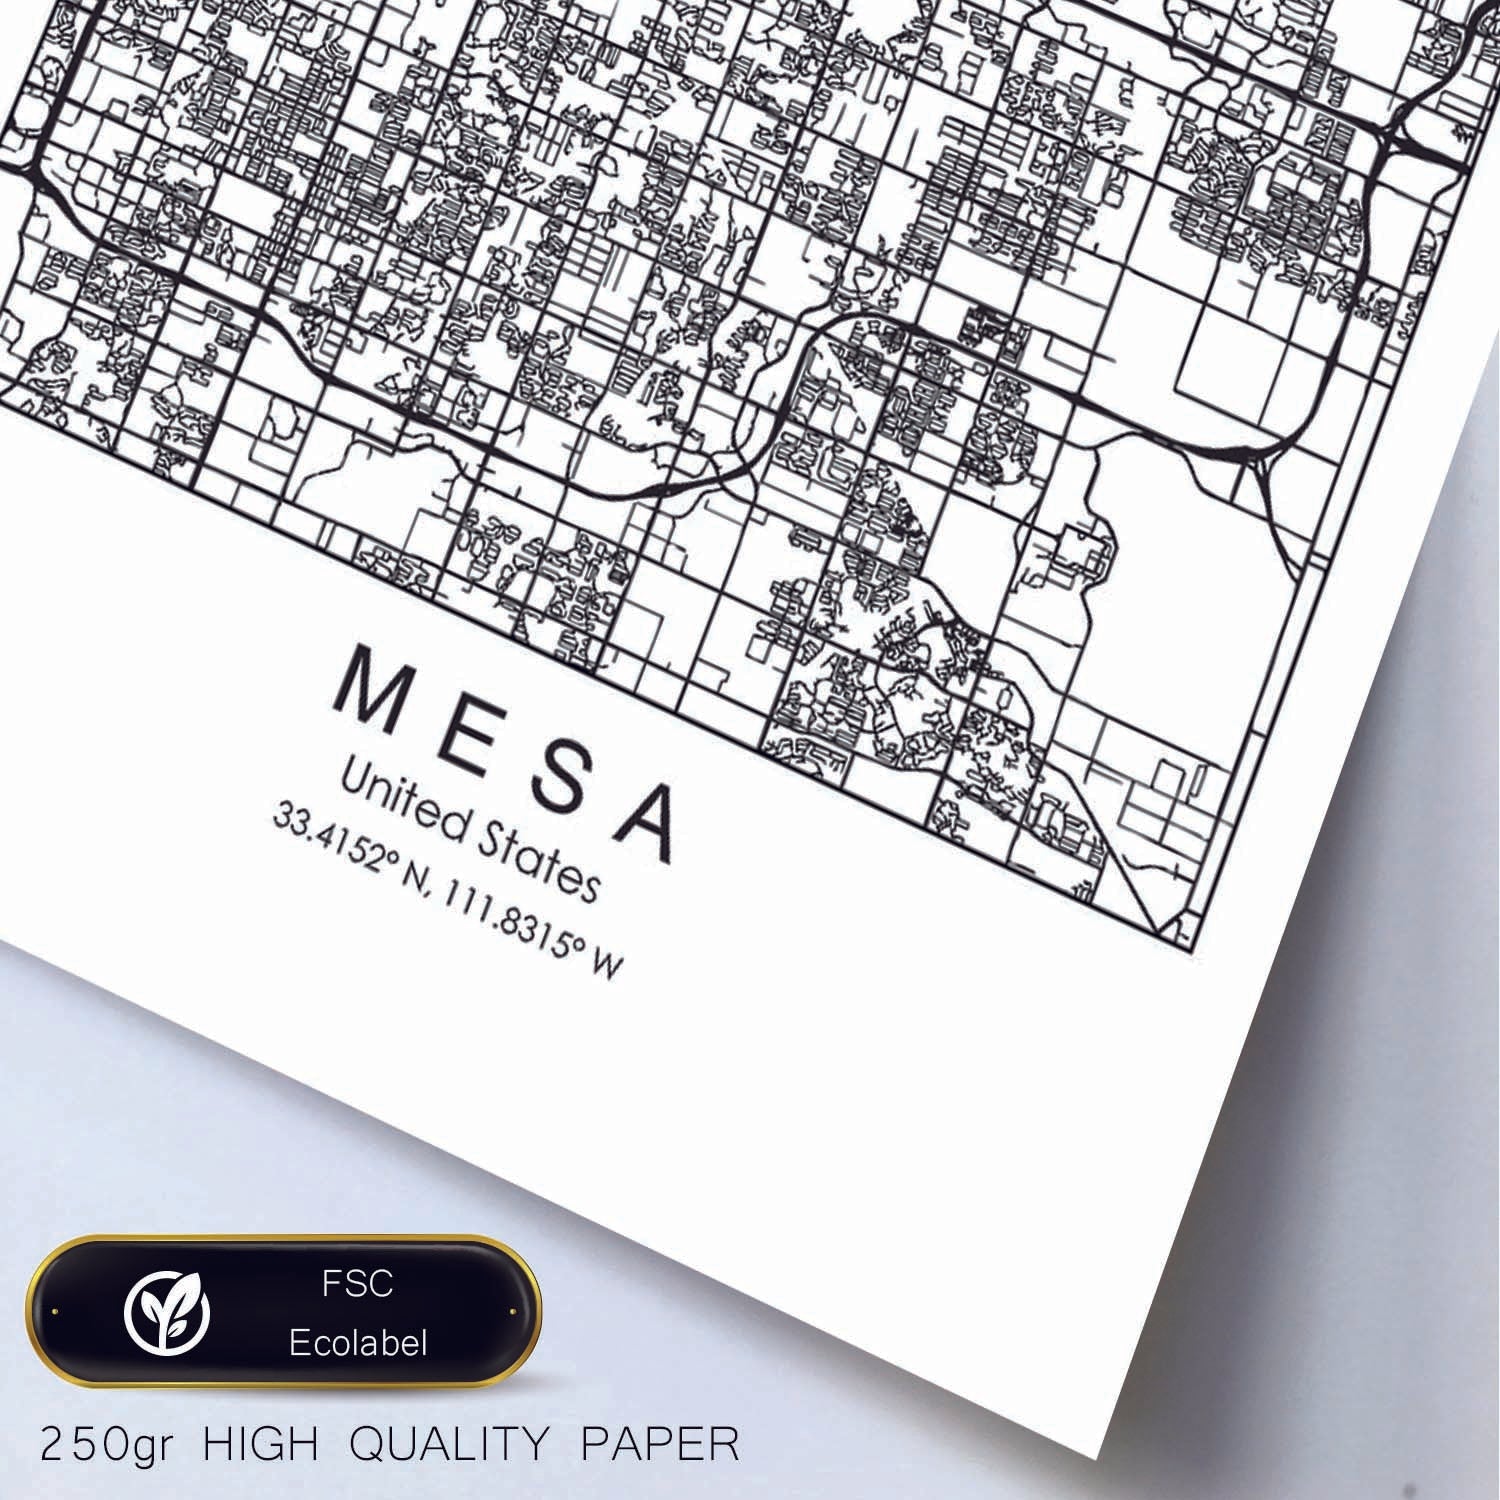 Poster con mapa de Mesa. Lámina de Estados Unidos, con imágenes de mapas y carreteras-Artwork-Nacnic-Nacnic Estudio SL